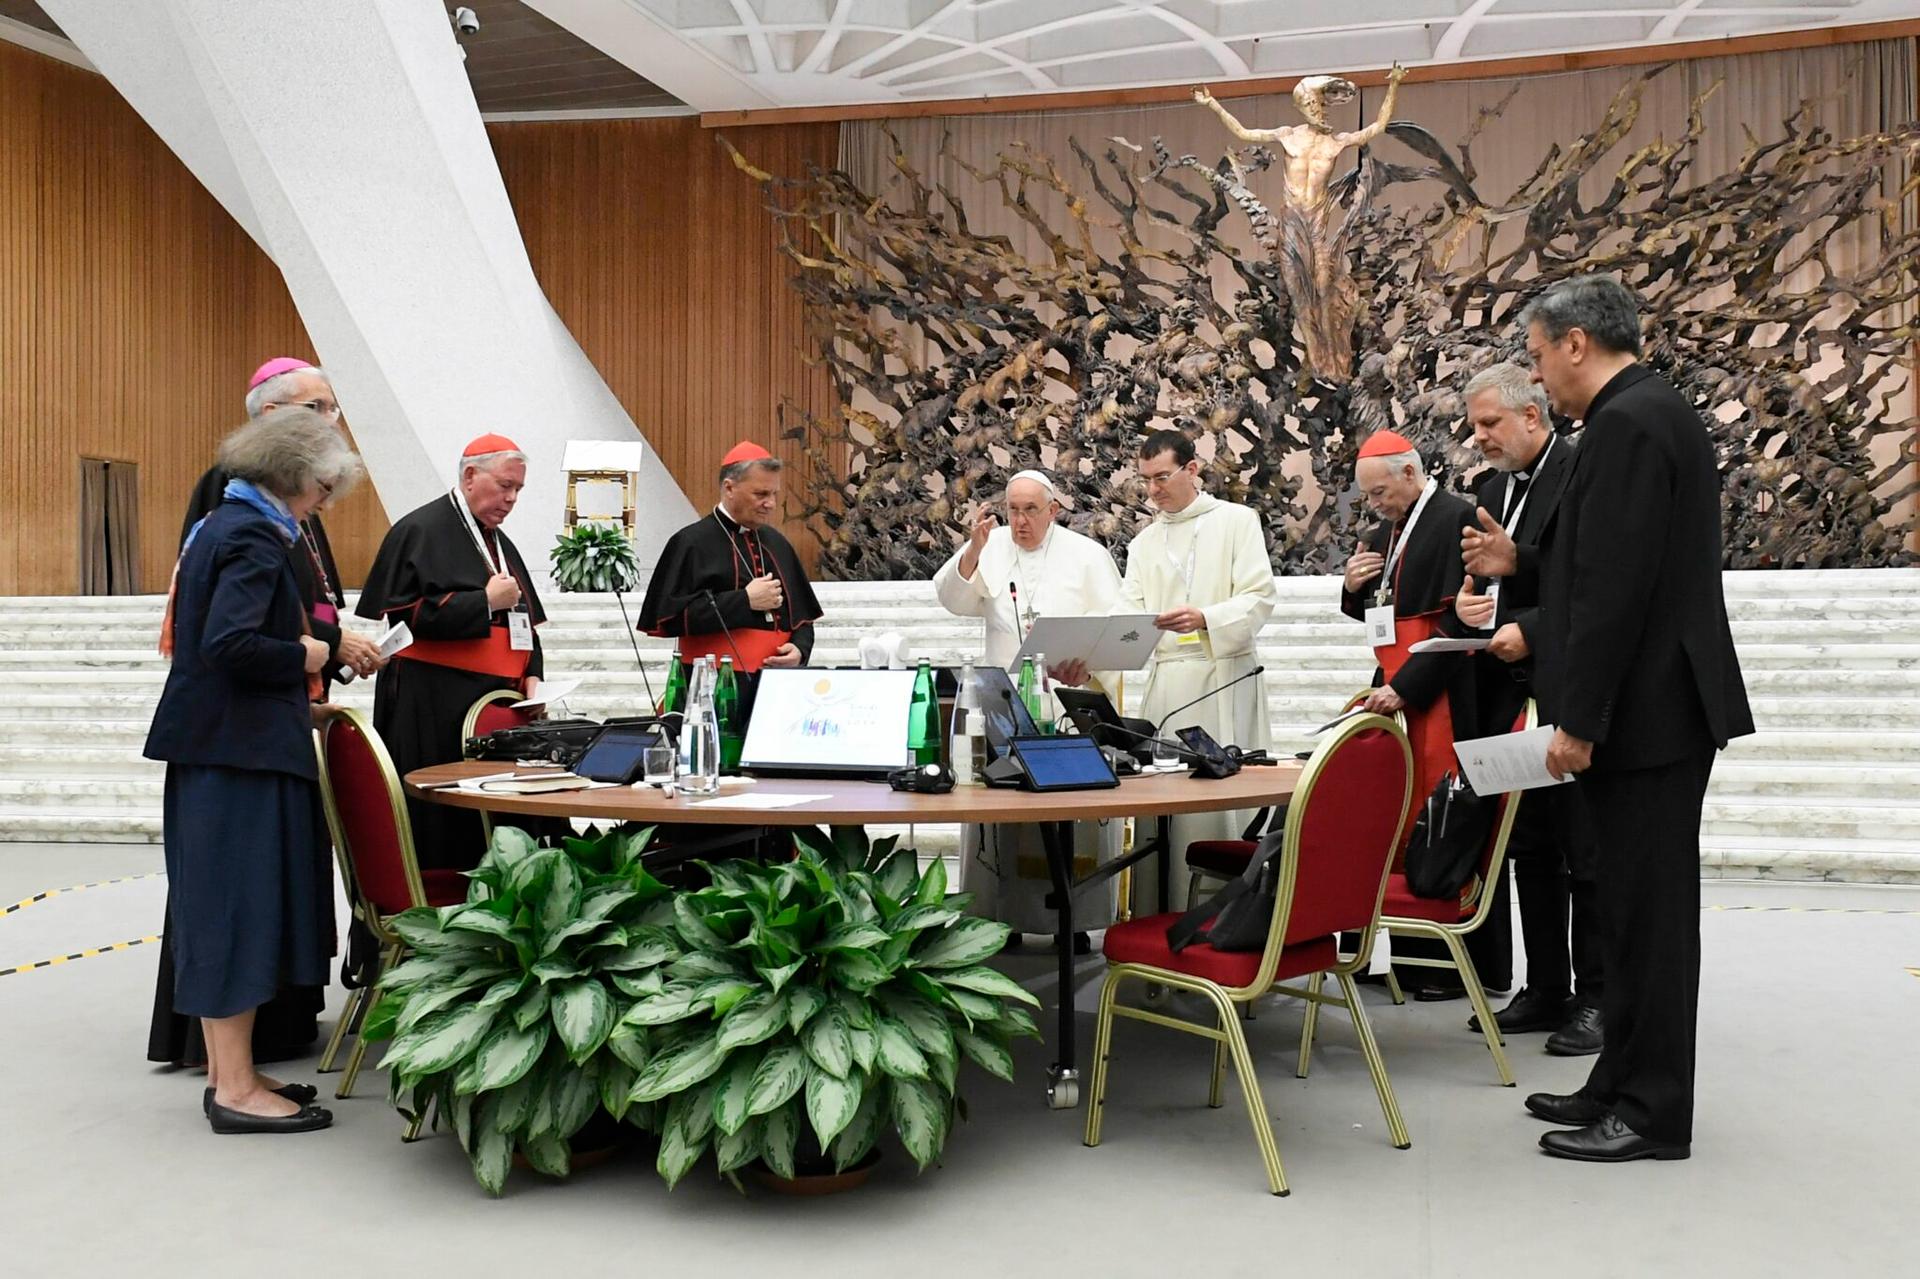 Après une réponse majoritairement négative, le Vatican supprime un sondage en ligne sur la « synodalité »